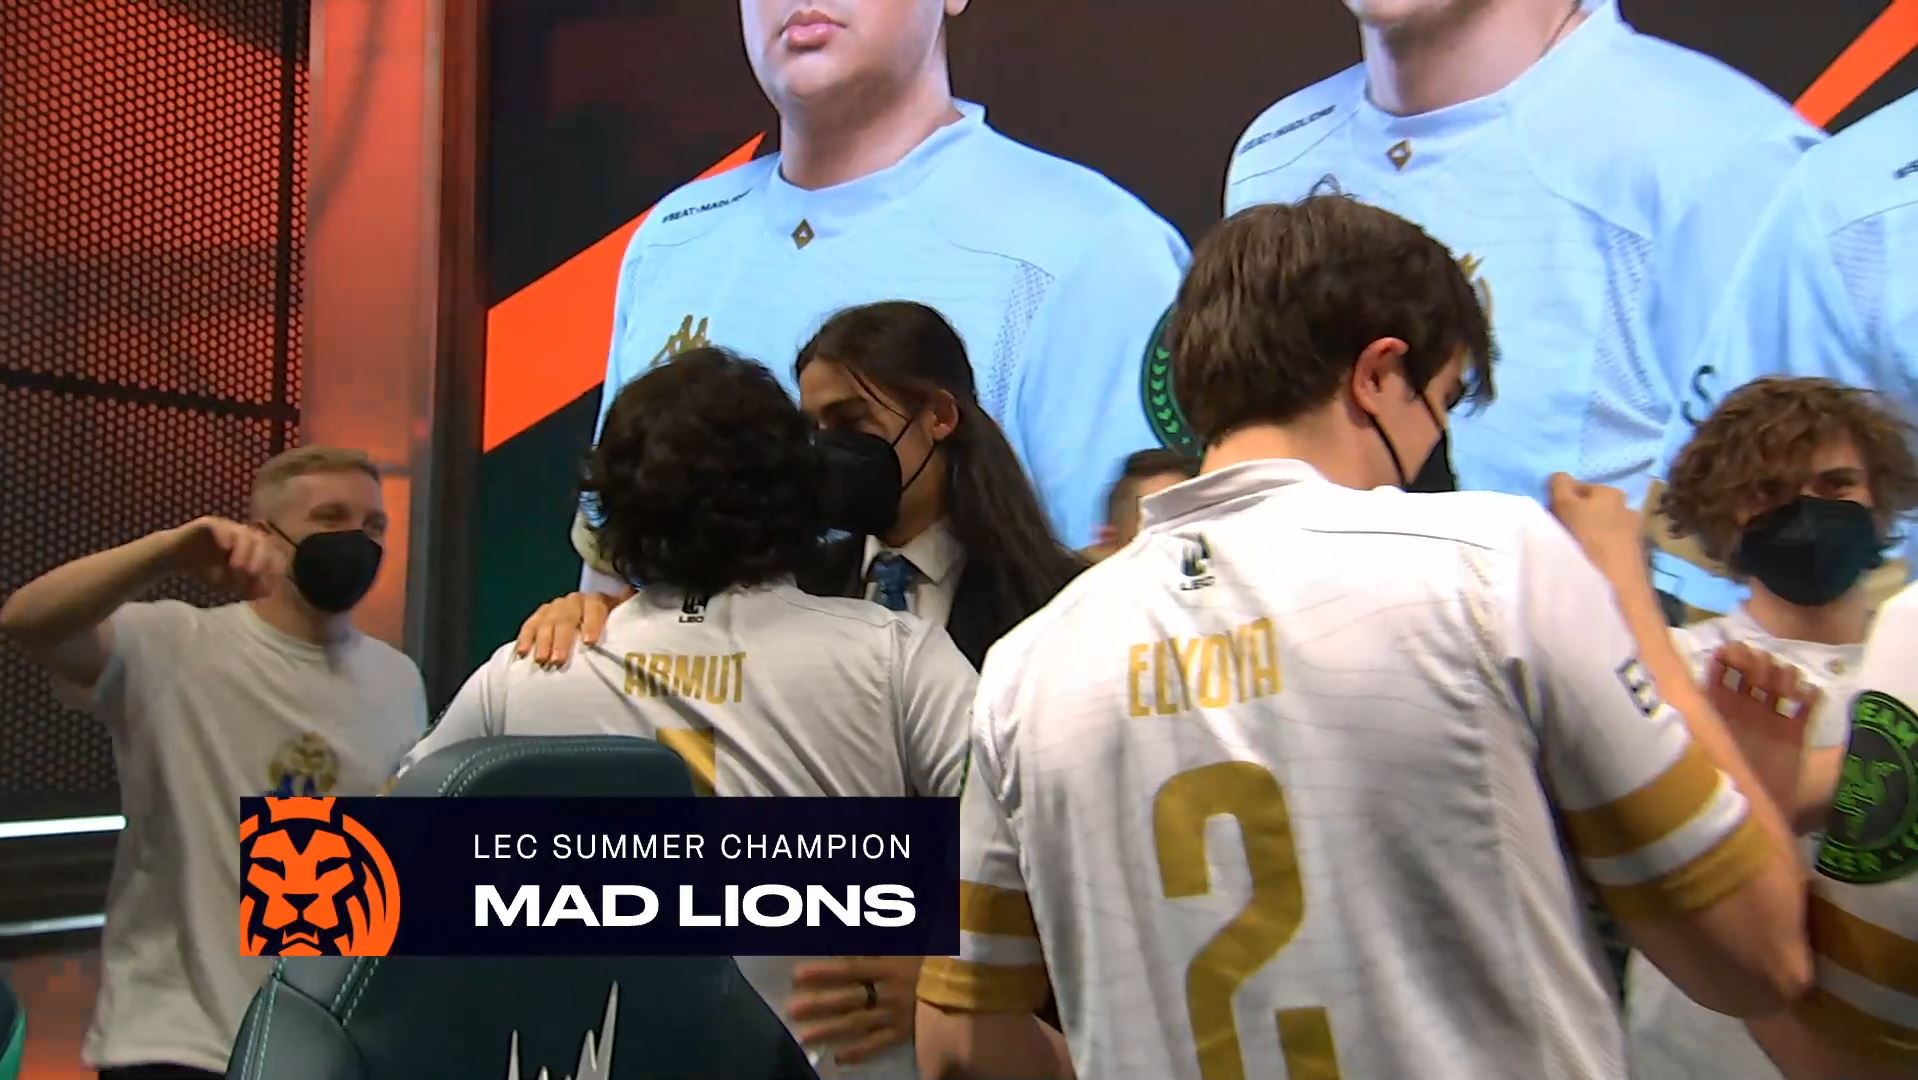 MAD Lions jsou opět šampiony! Čeští hráči Carzzy a Humanoid mají další evropské zlato